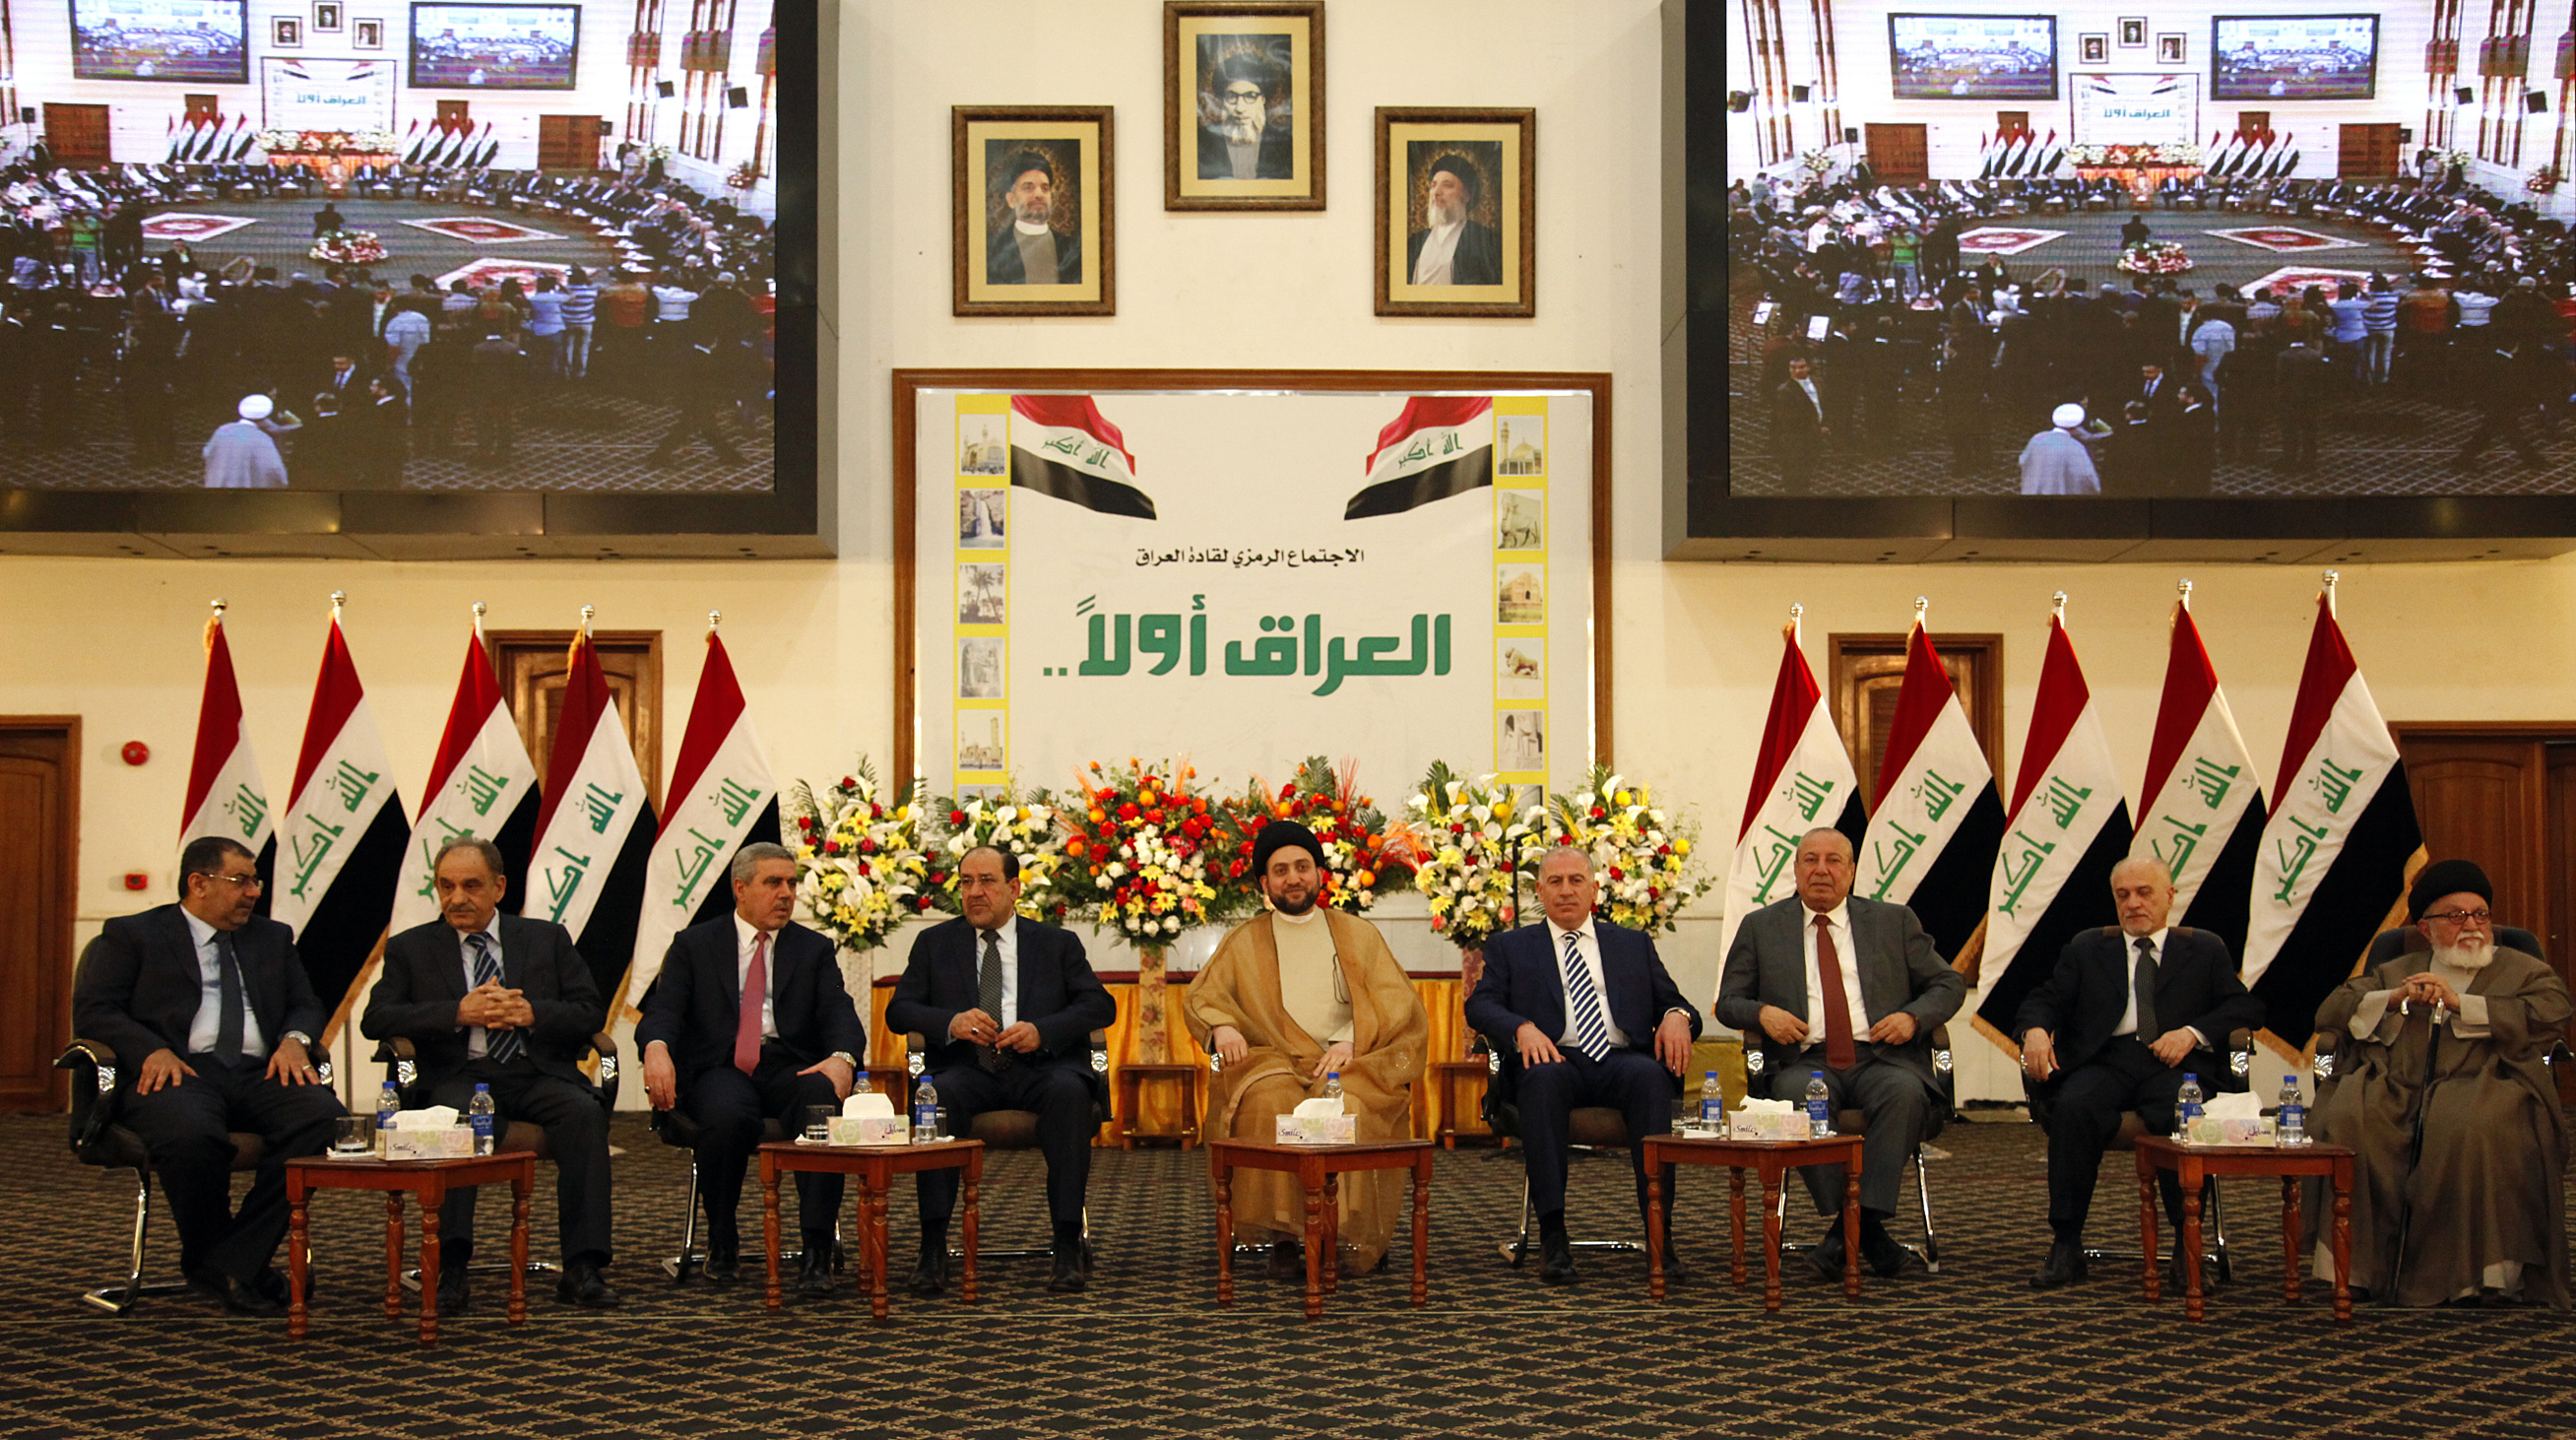 بعد أكثر من 11 سنة من “الشرف” ..قادة العراق الجديد يوقعون على ميثاق  “الشرف” !